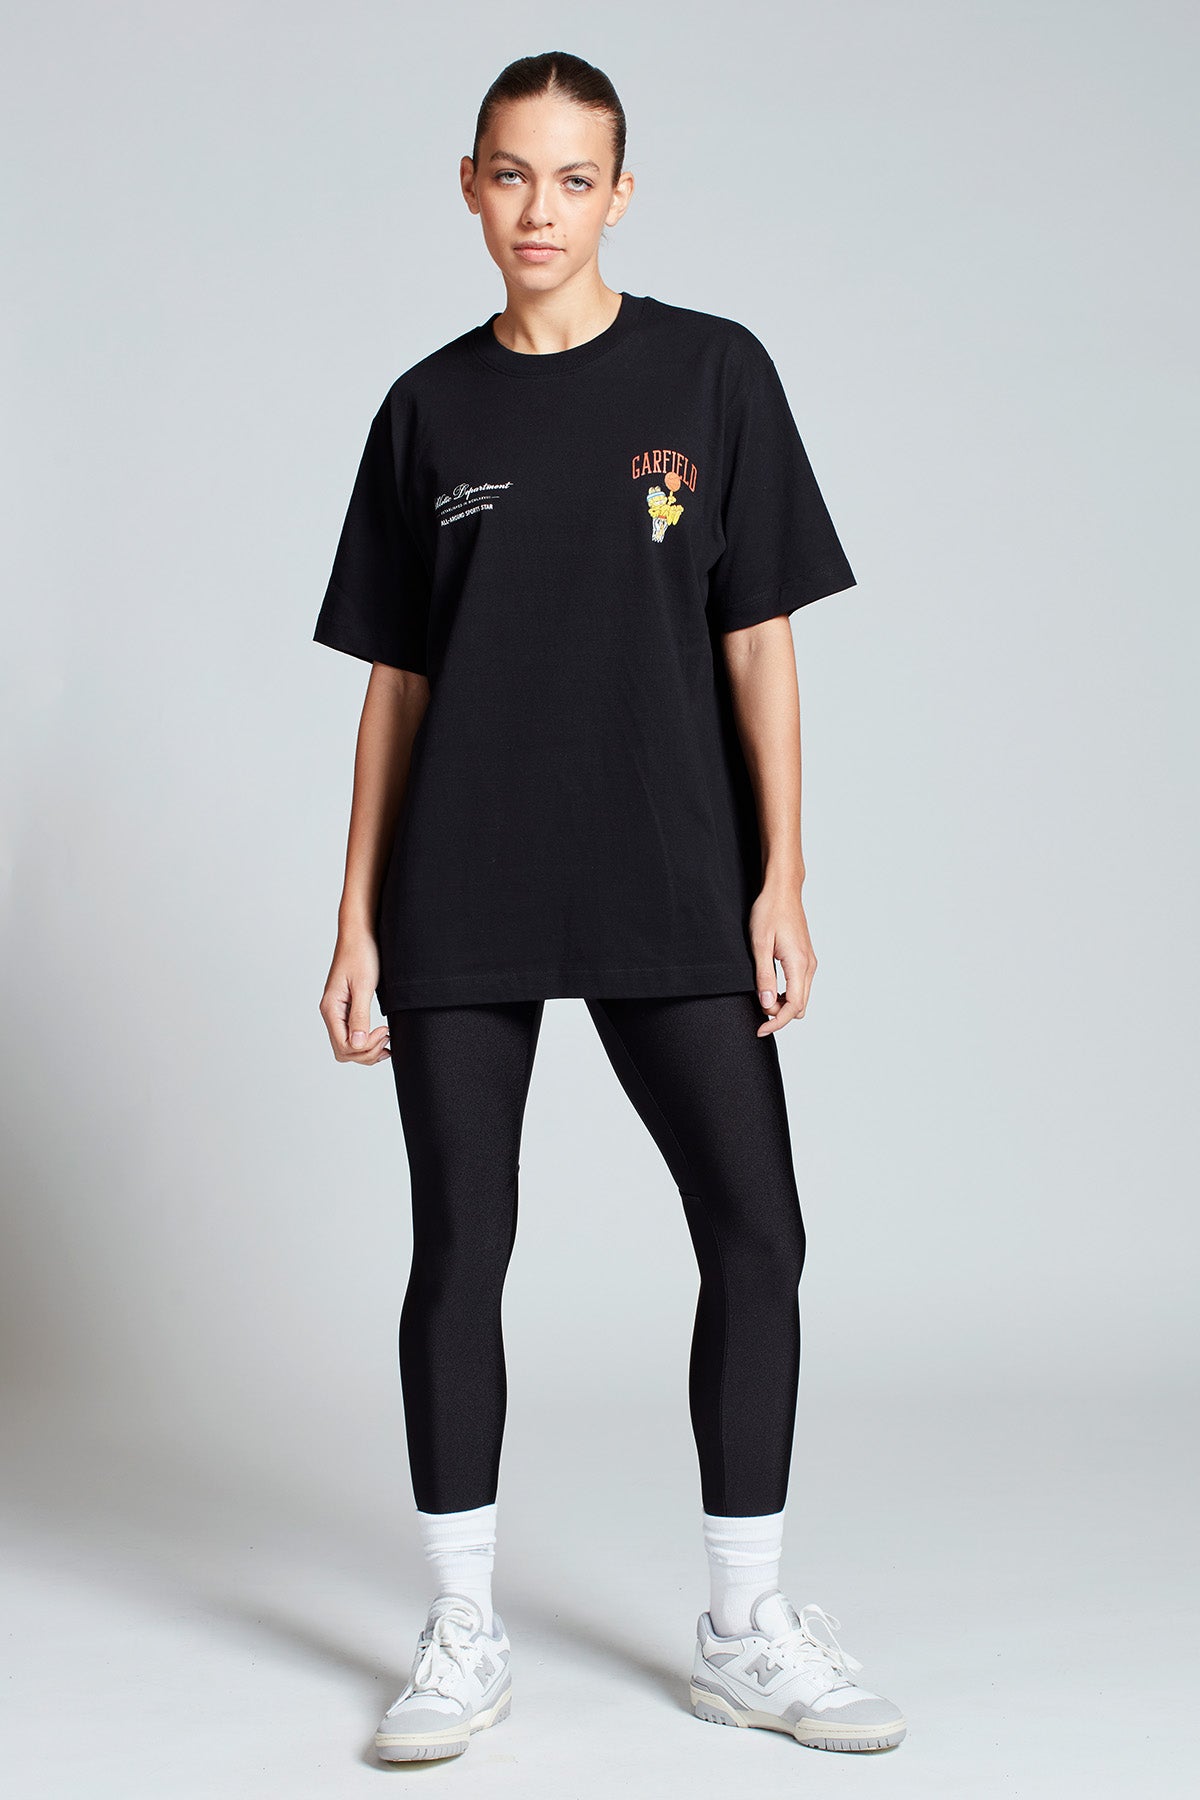 Garfield Sports Star T-shirt in Black